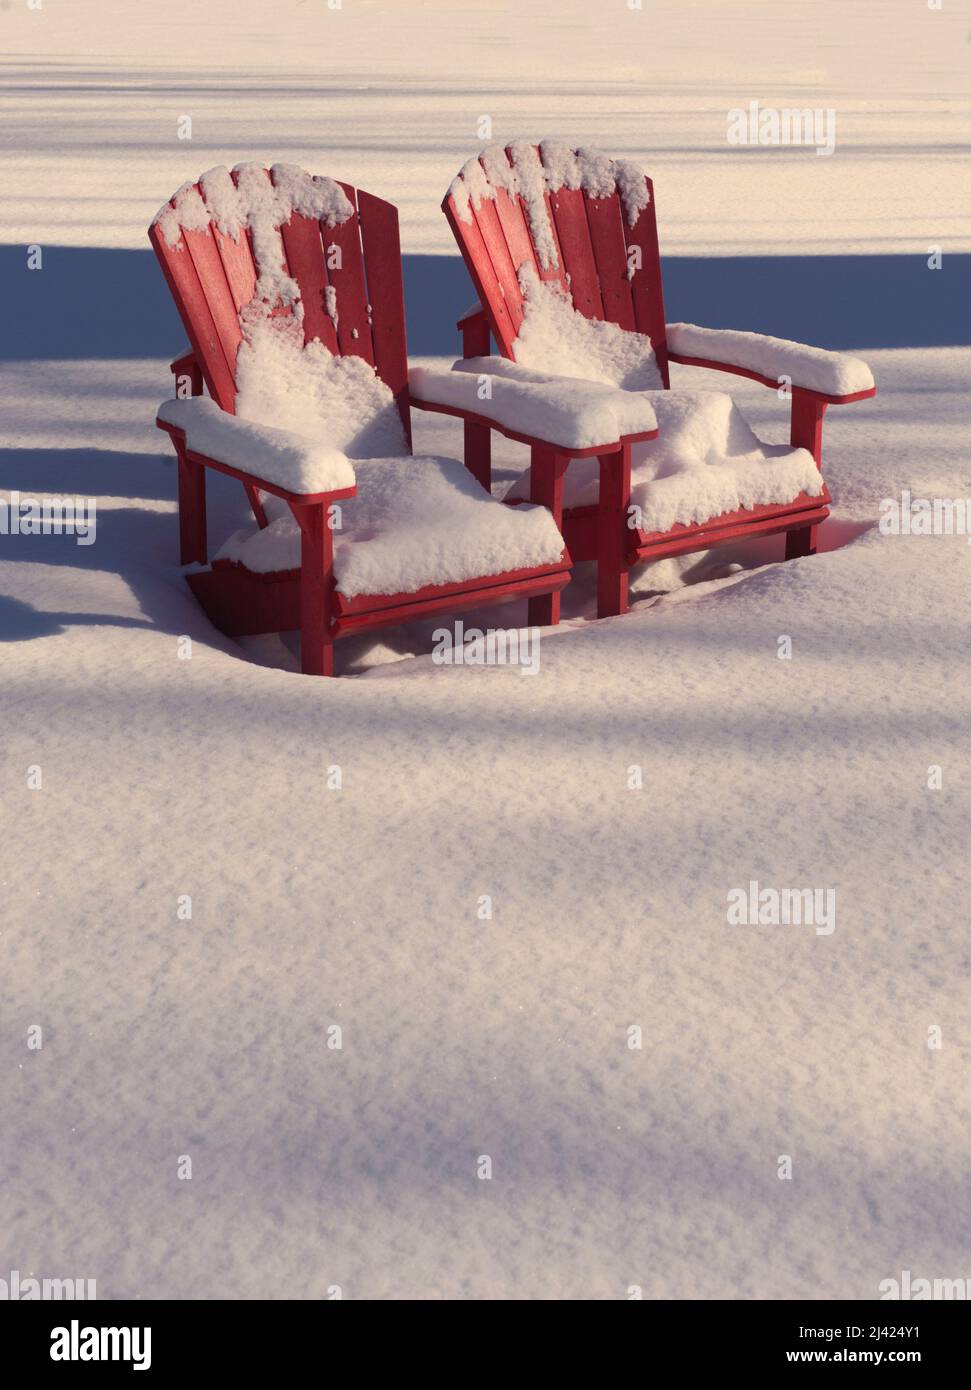 Schneebedeckte Stühle im Muskoka- oder Adirondack-Stil in schneebedeckter Landschaft. Stockfoto